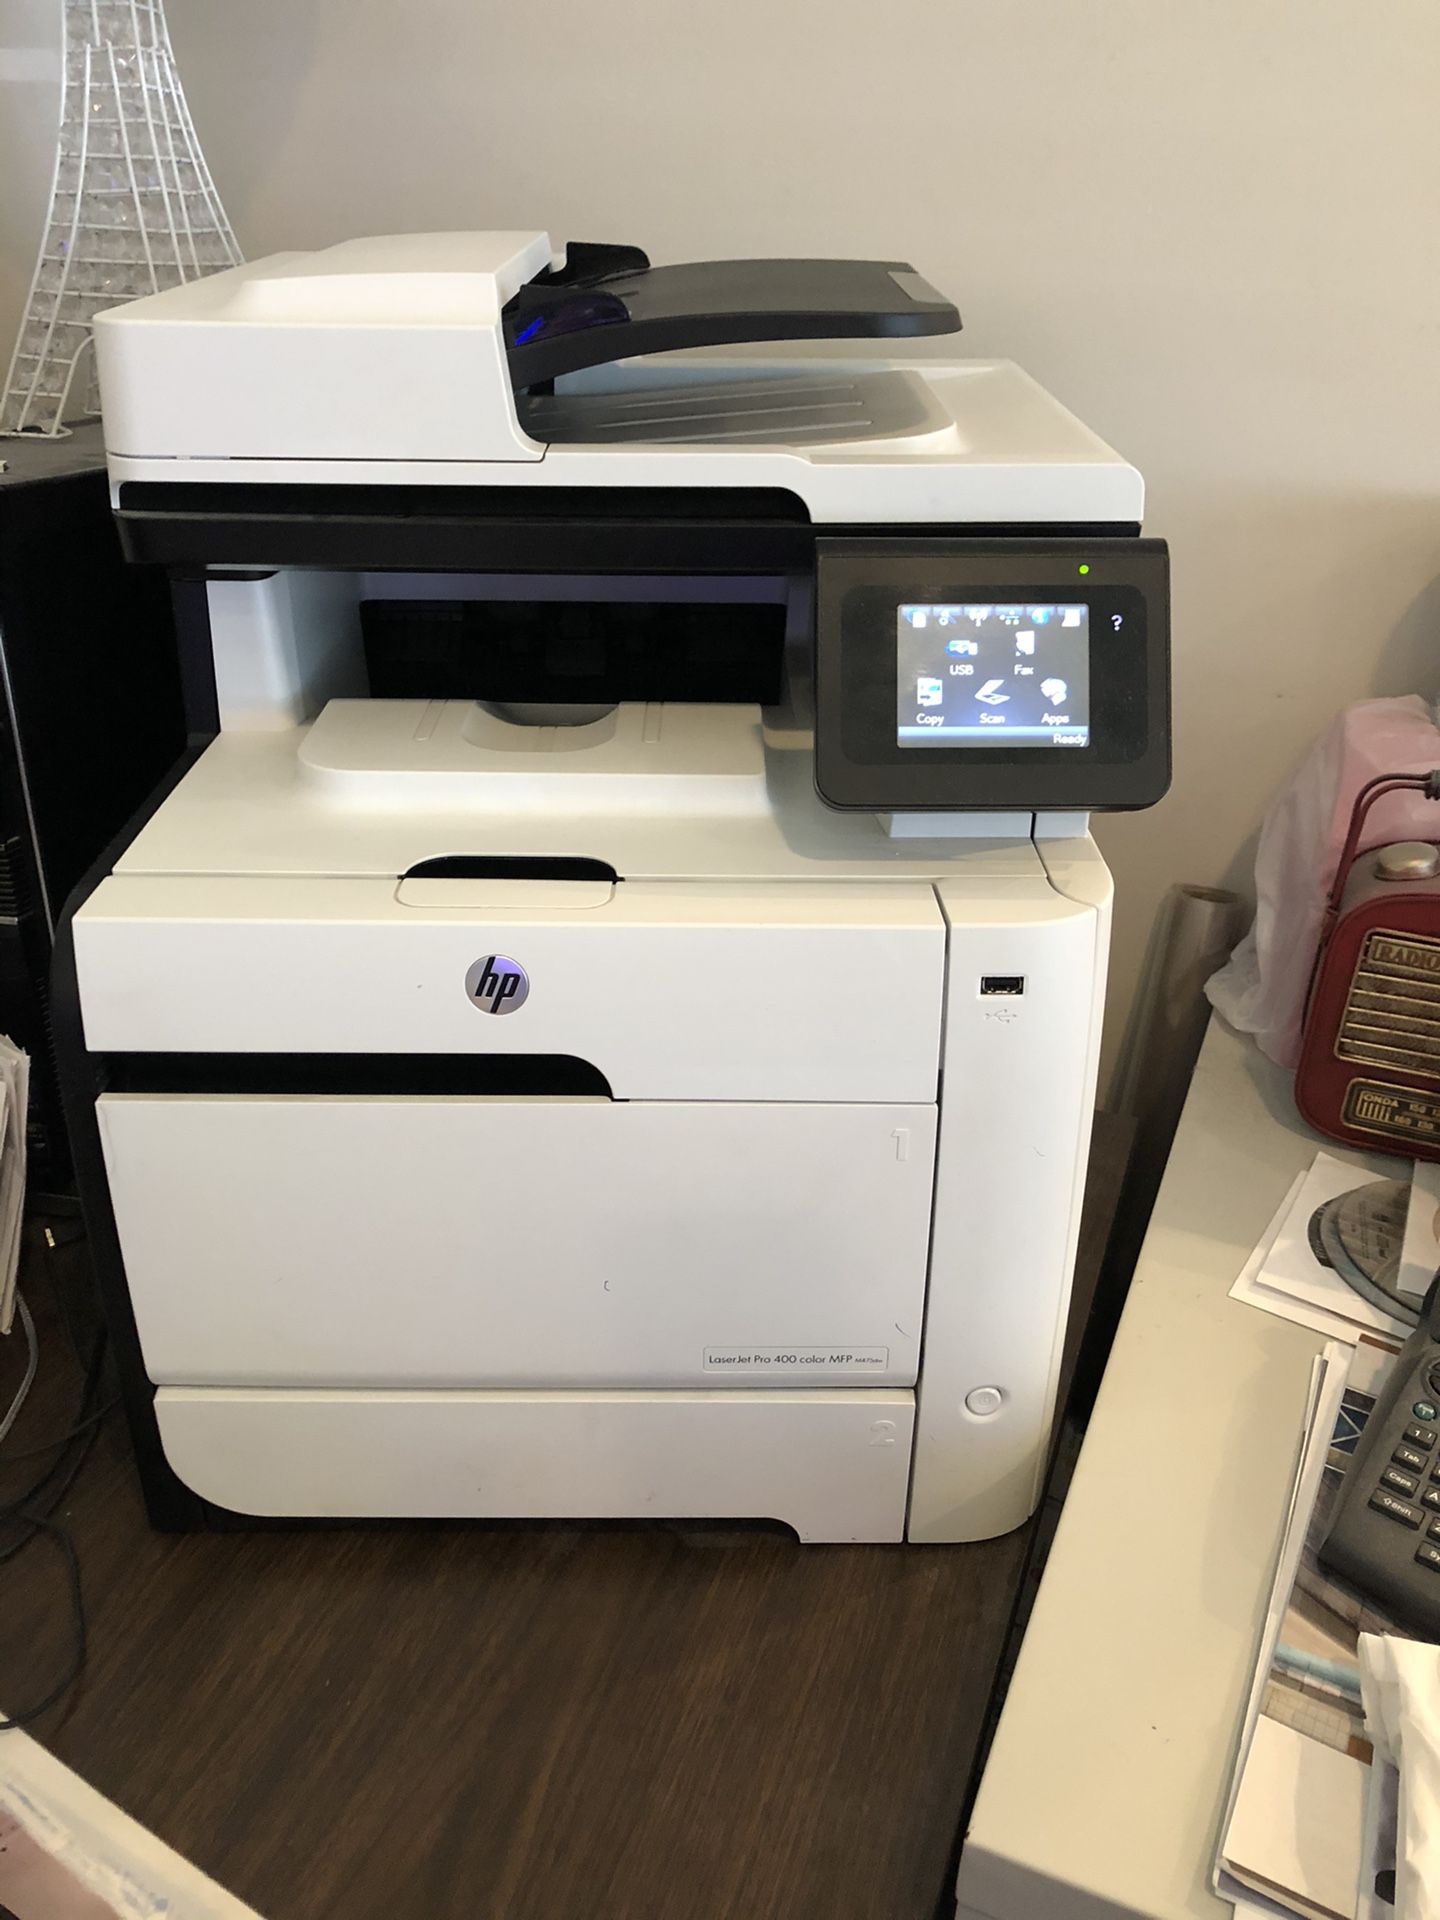 HP Laser Jet Pro. Color printer Fax & Scanner